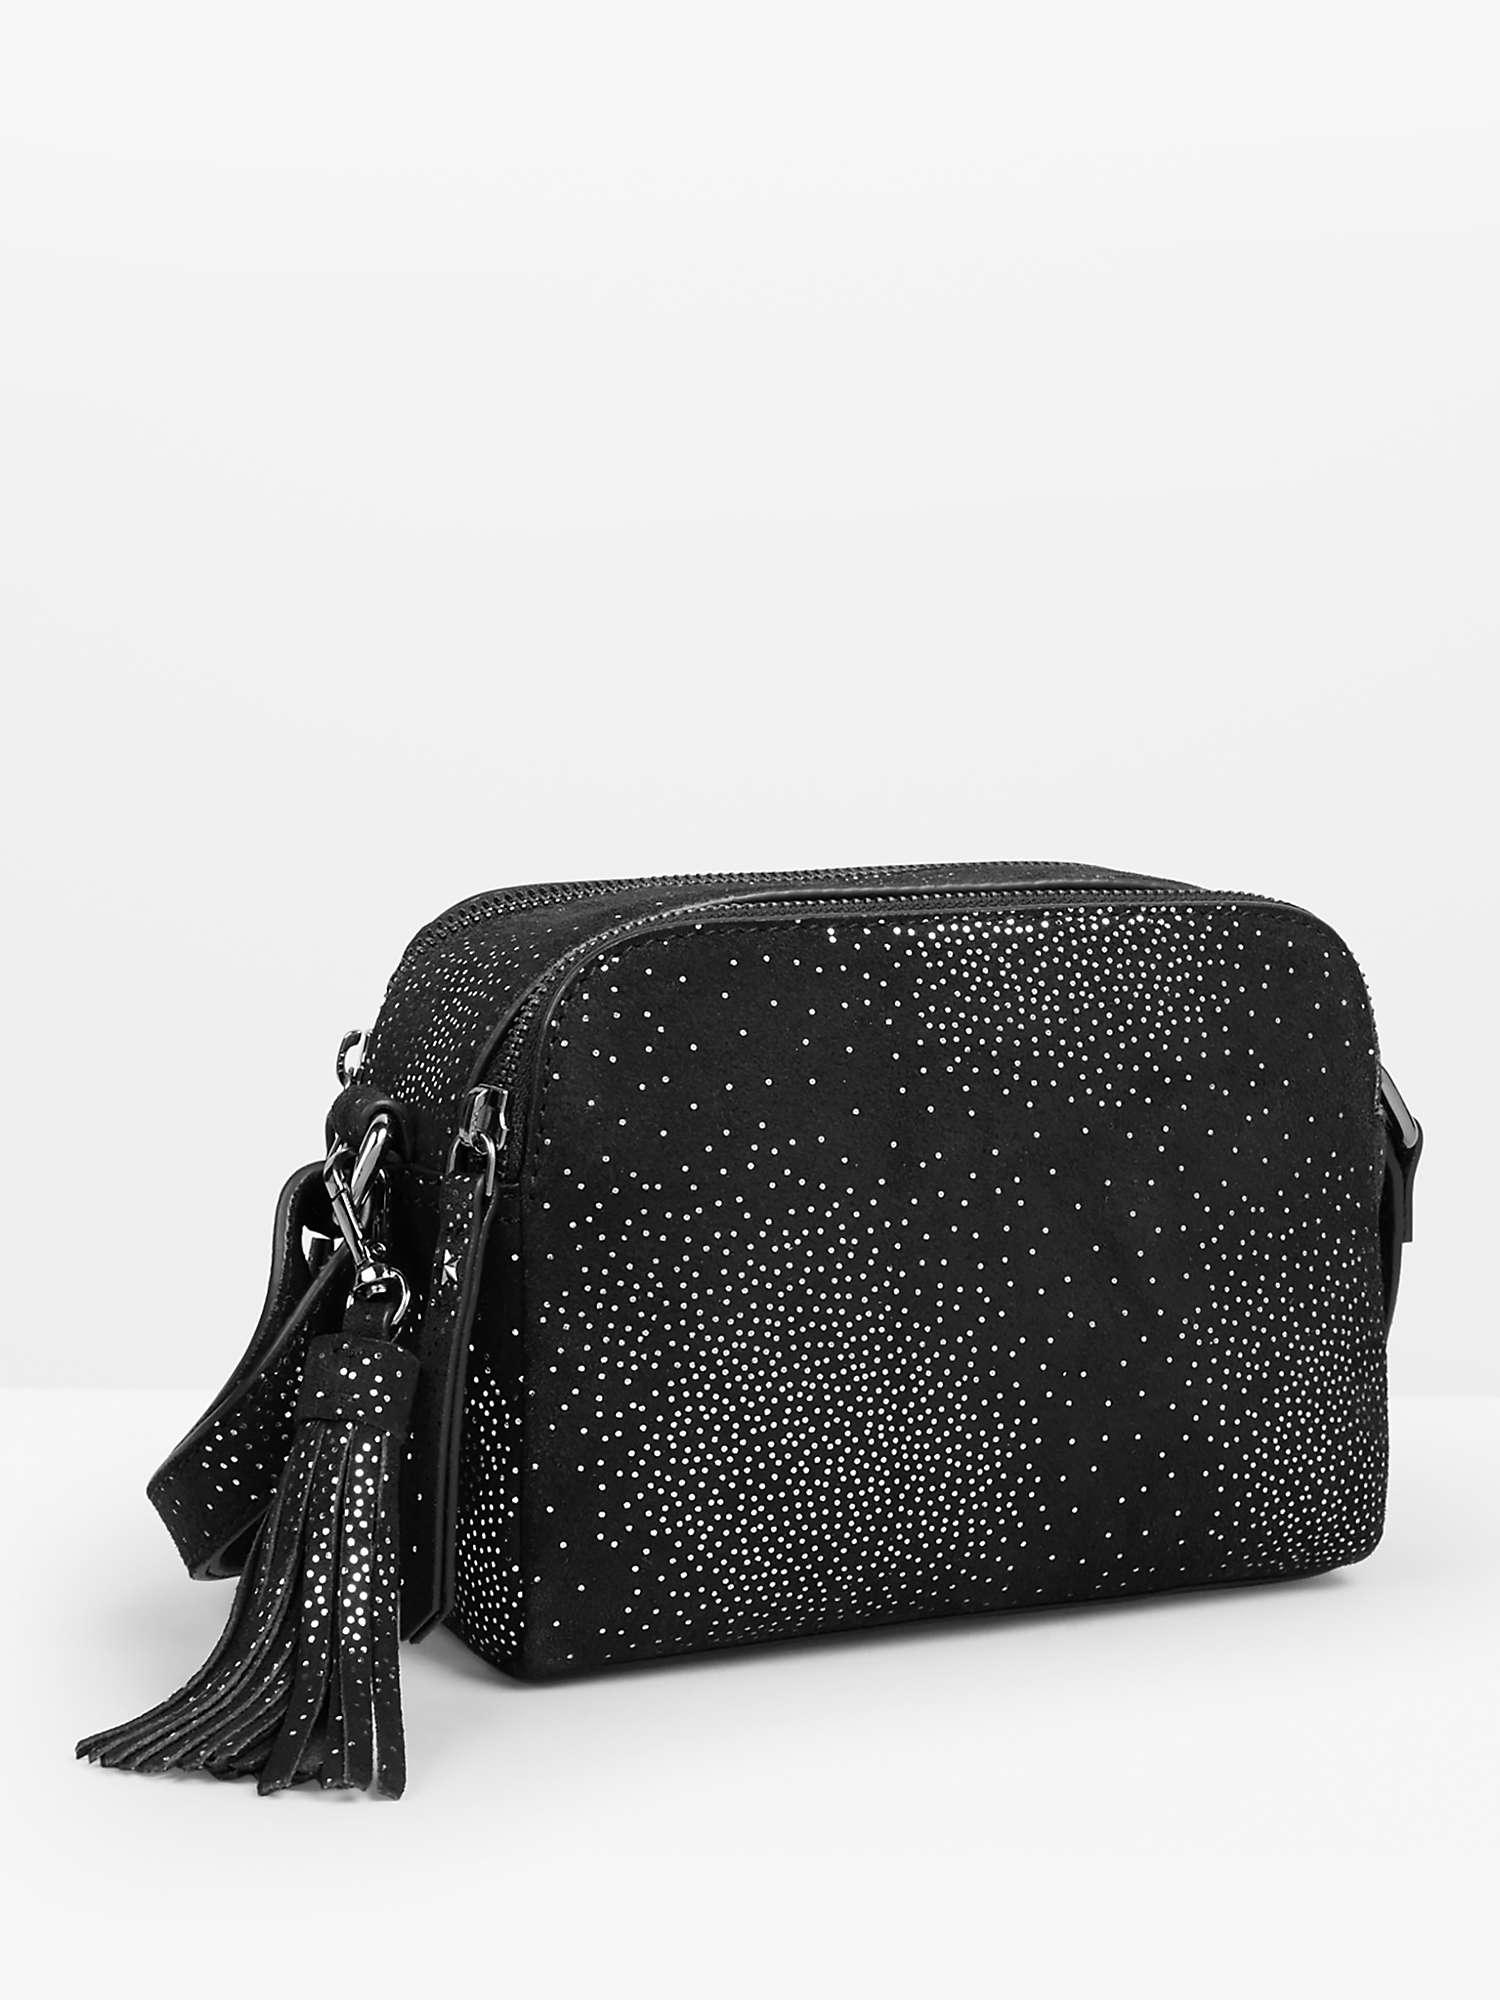 Buy HUSH Luna Crossbody Bag, Black/Pewter Online at johnlewis.com